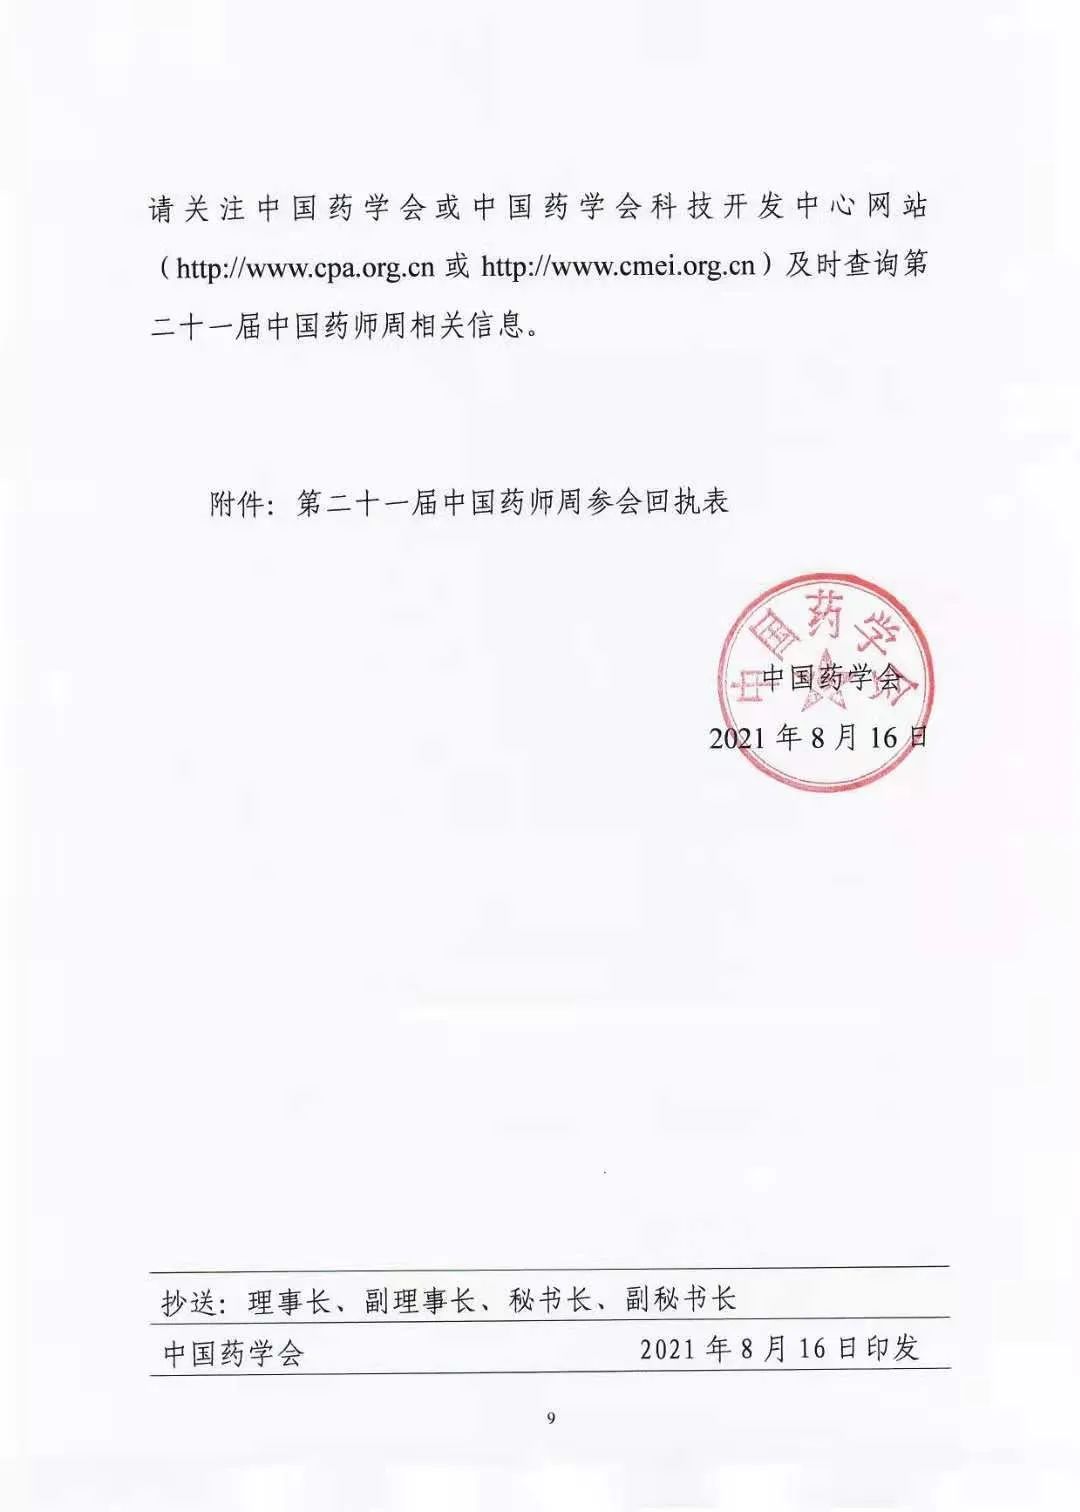 关于举办中国药学会第二十一届中国药师周的通知（第一轮）(图9)